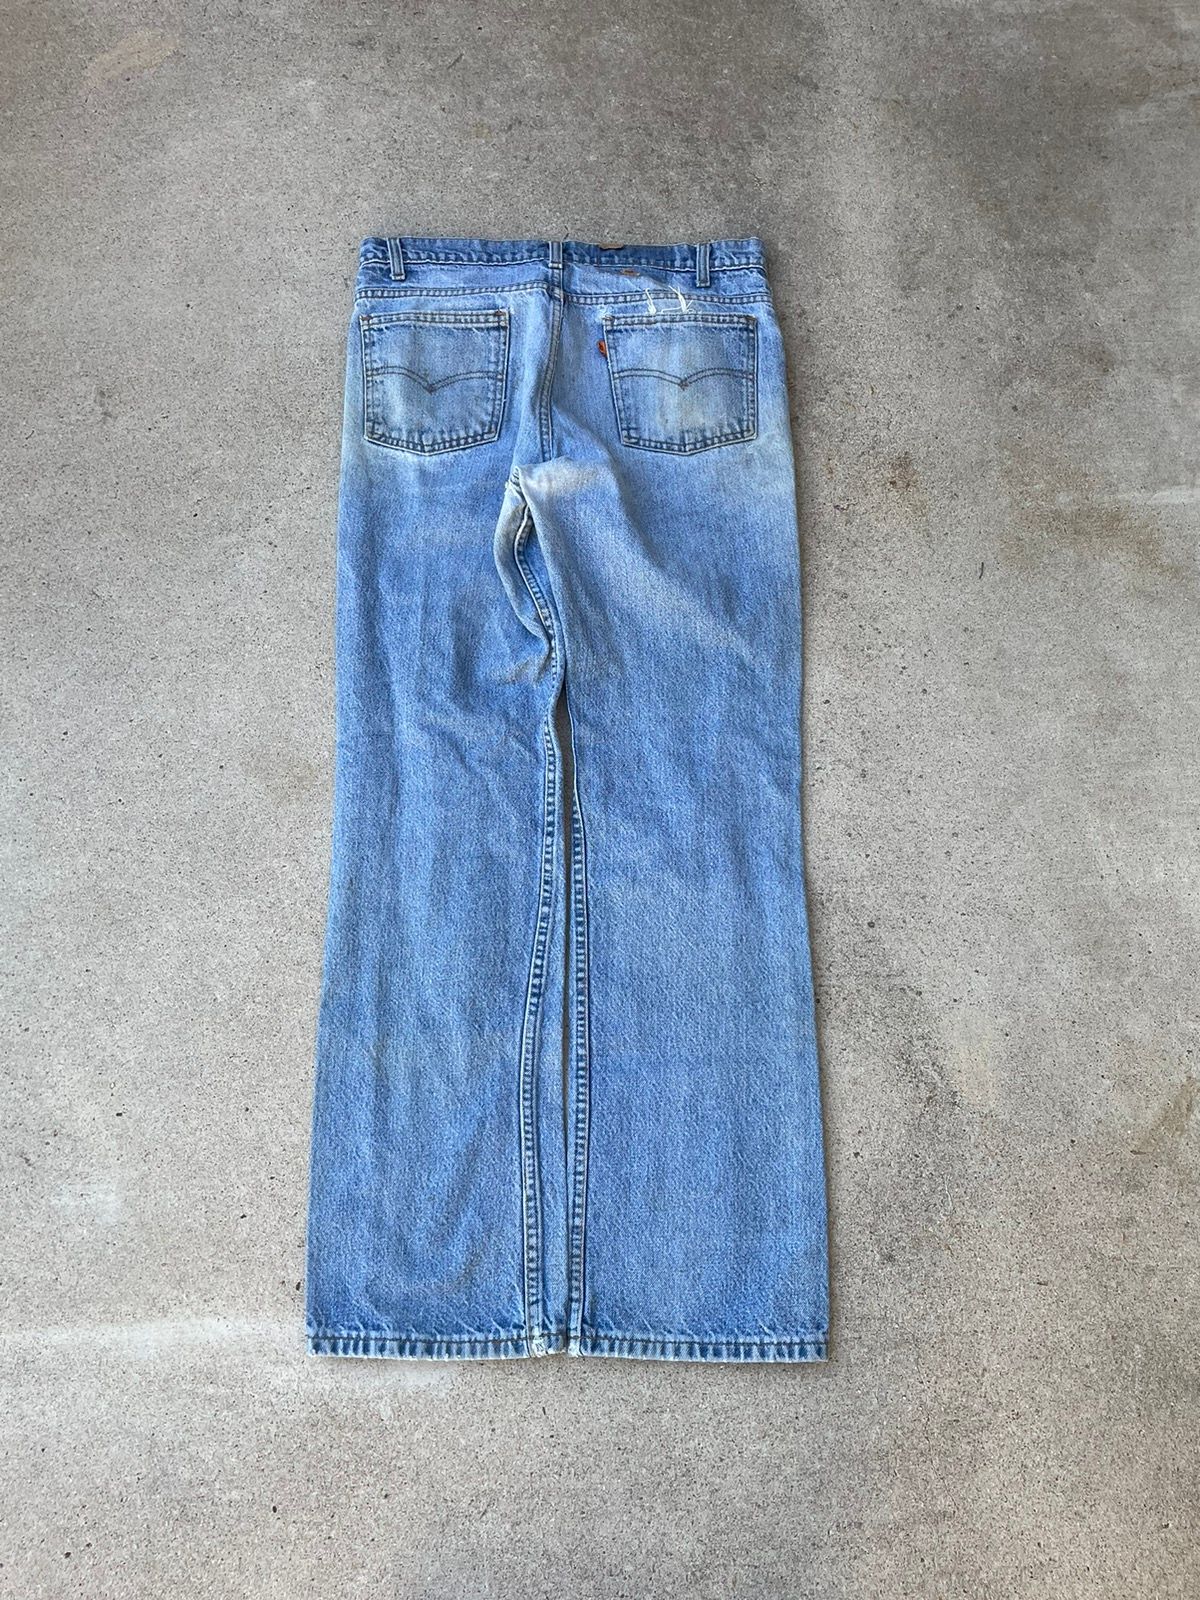 Vintage Vtg 80s Levis 517 Orange Tab Bootcut Distressed Jeans 34x31 Size US 32 / EU 48 - 2 Preview